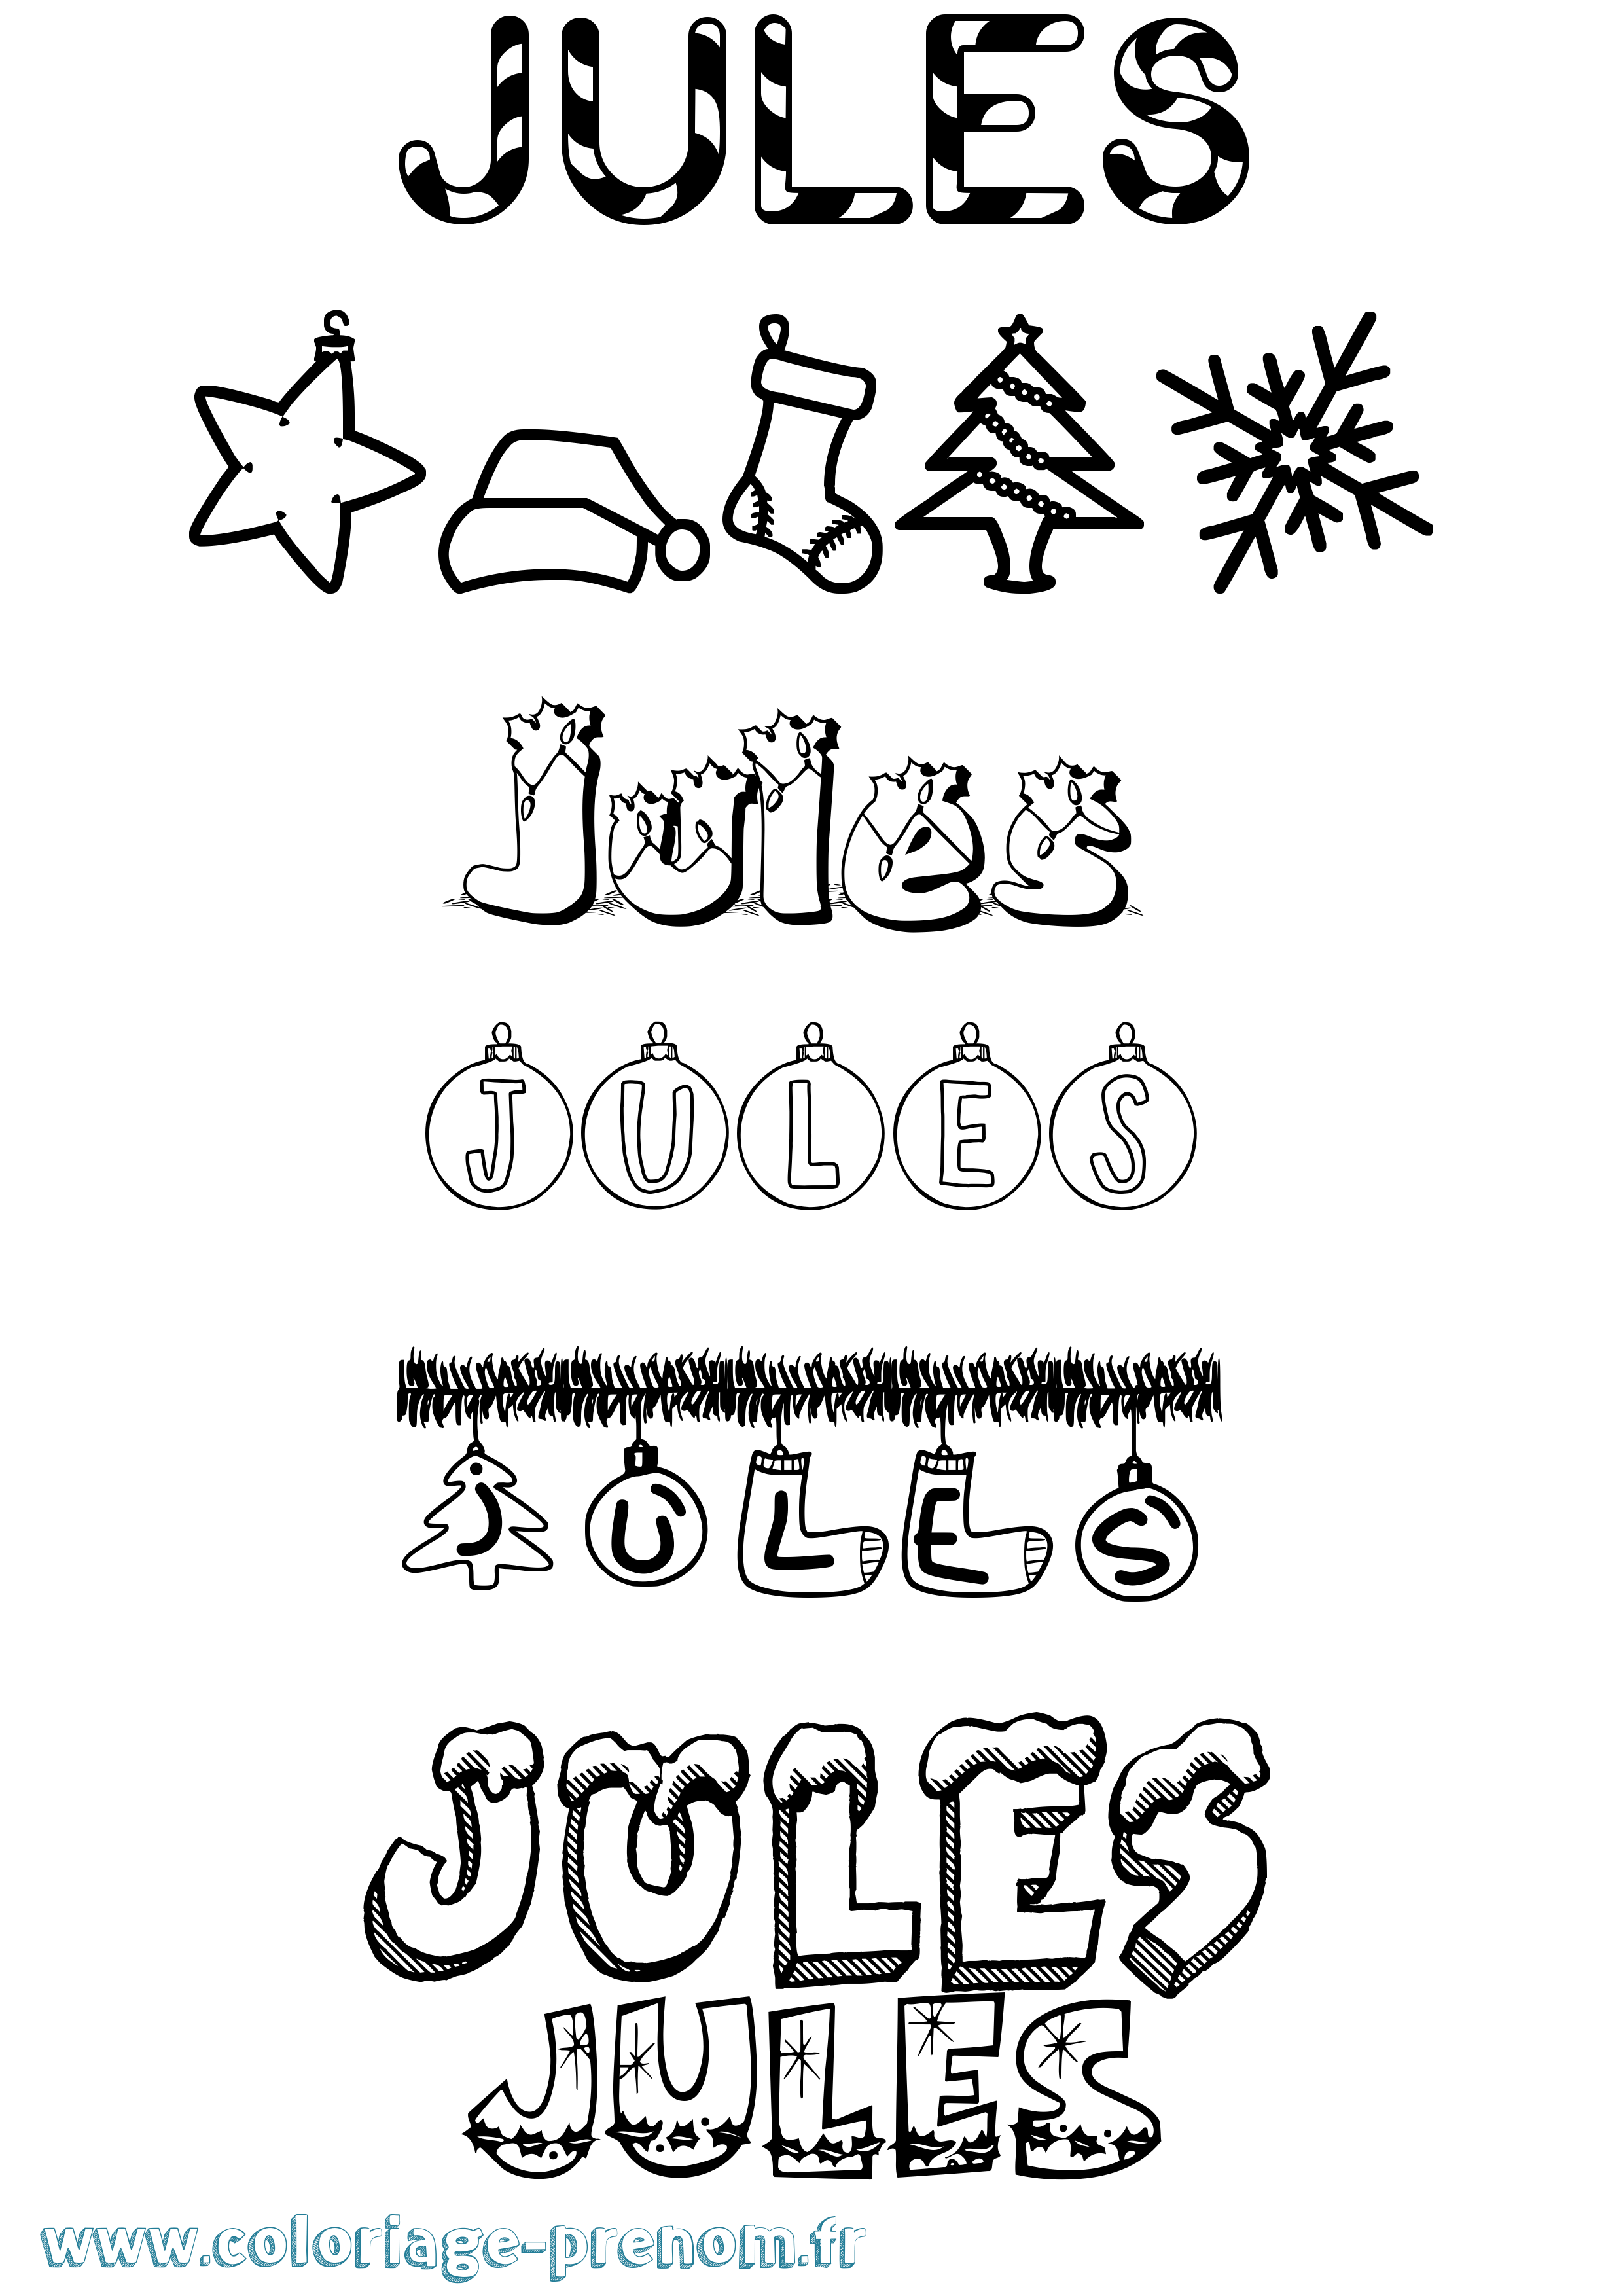 Coloriage prénom Jules Noël